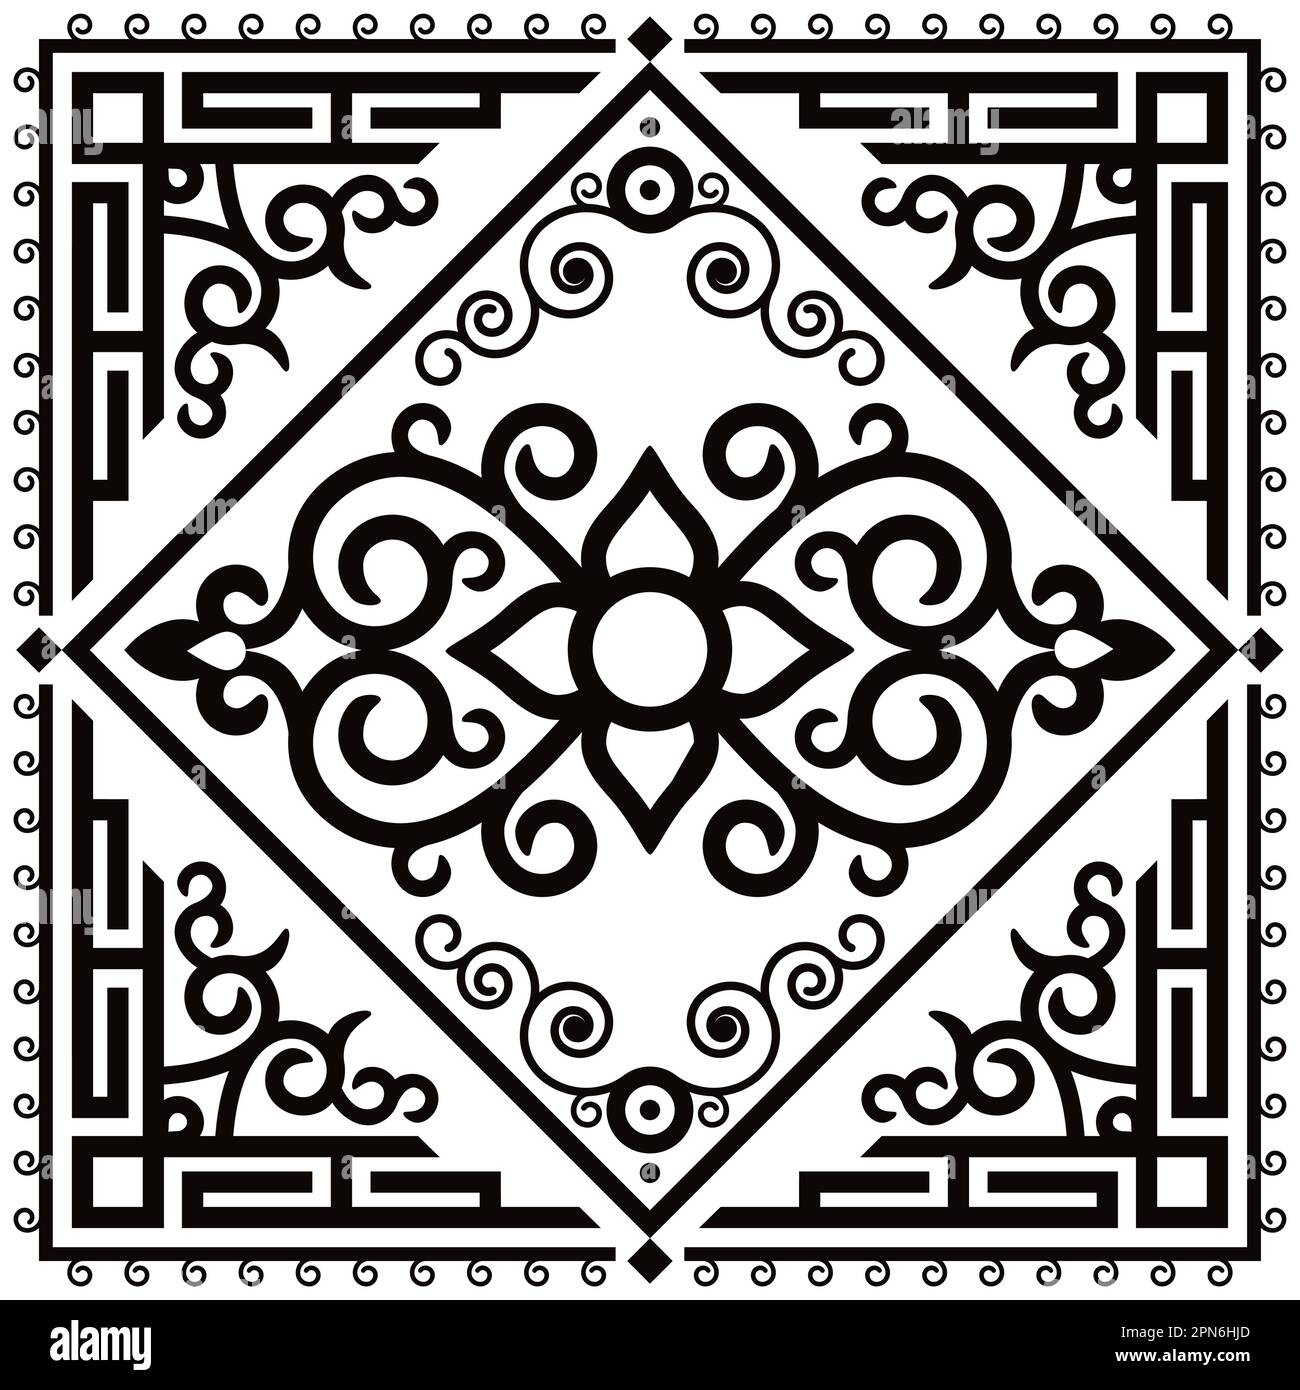 Orientalisches schwarz-weißes Quadratmuster, inspiriert von Folk Art aus Monogolien und Zentralasien, traditionelle Einrichtung mit Wirbeln und Blumen Stock Vektor